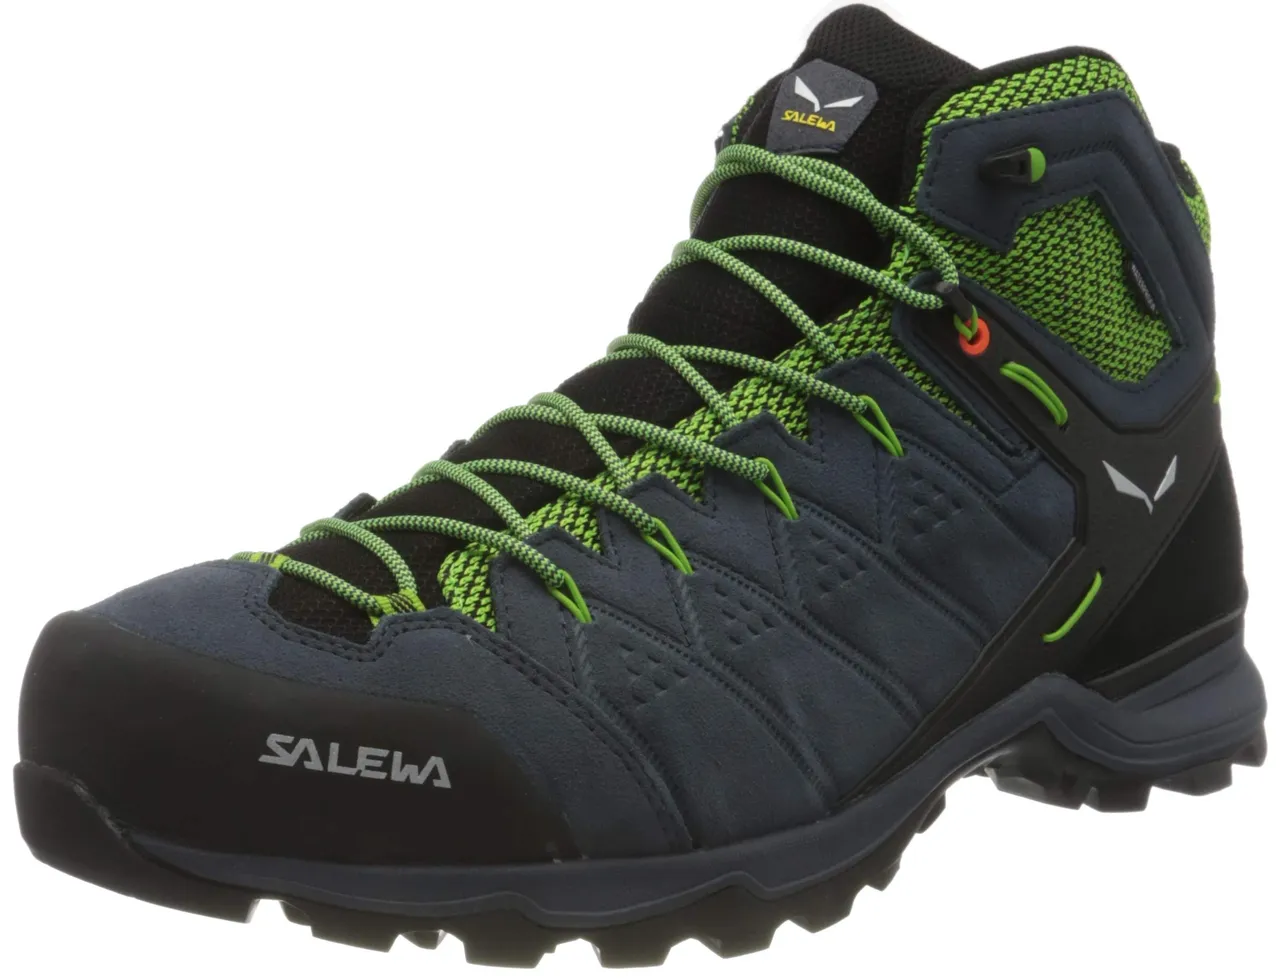 Salewa Men's Ms Alp Mate Mid Gore-tex Trekking hiking boots